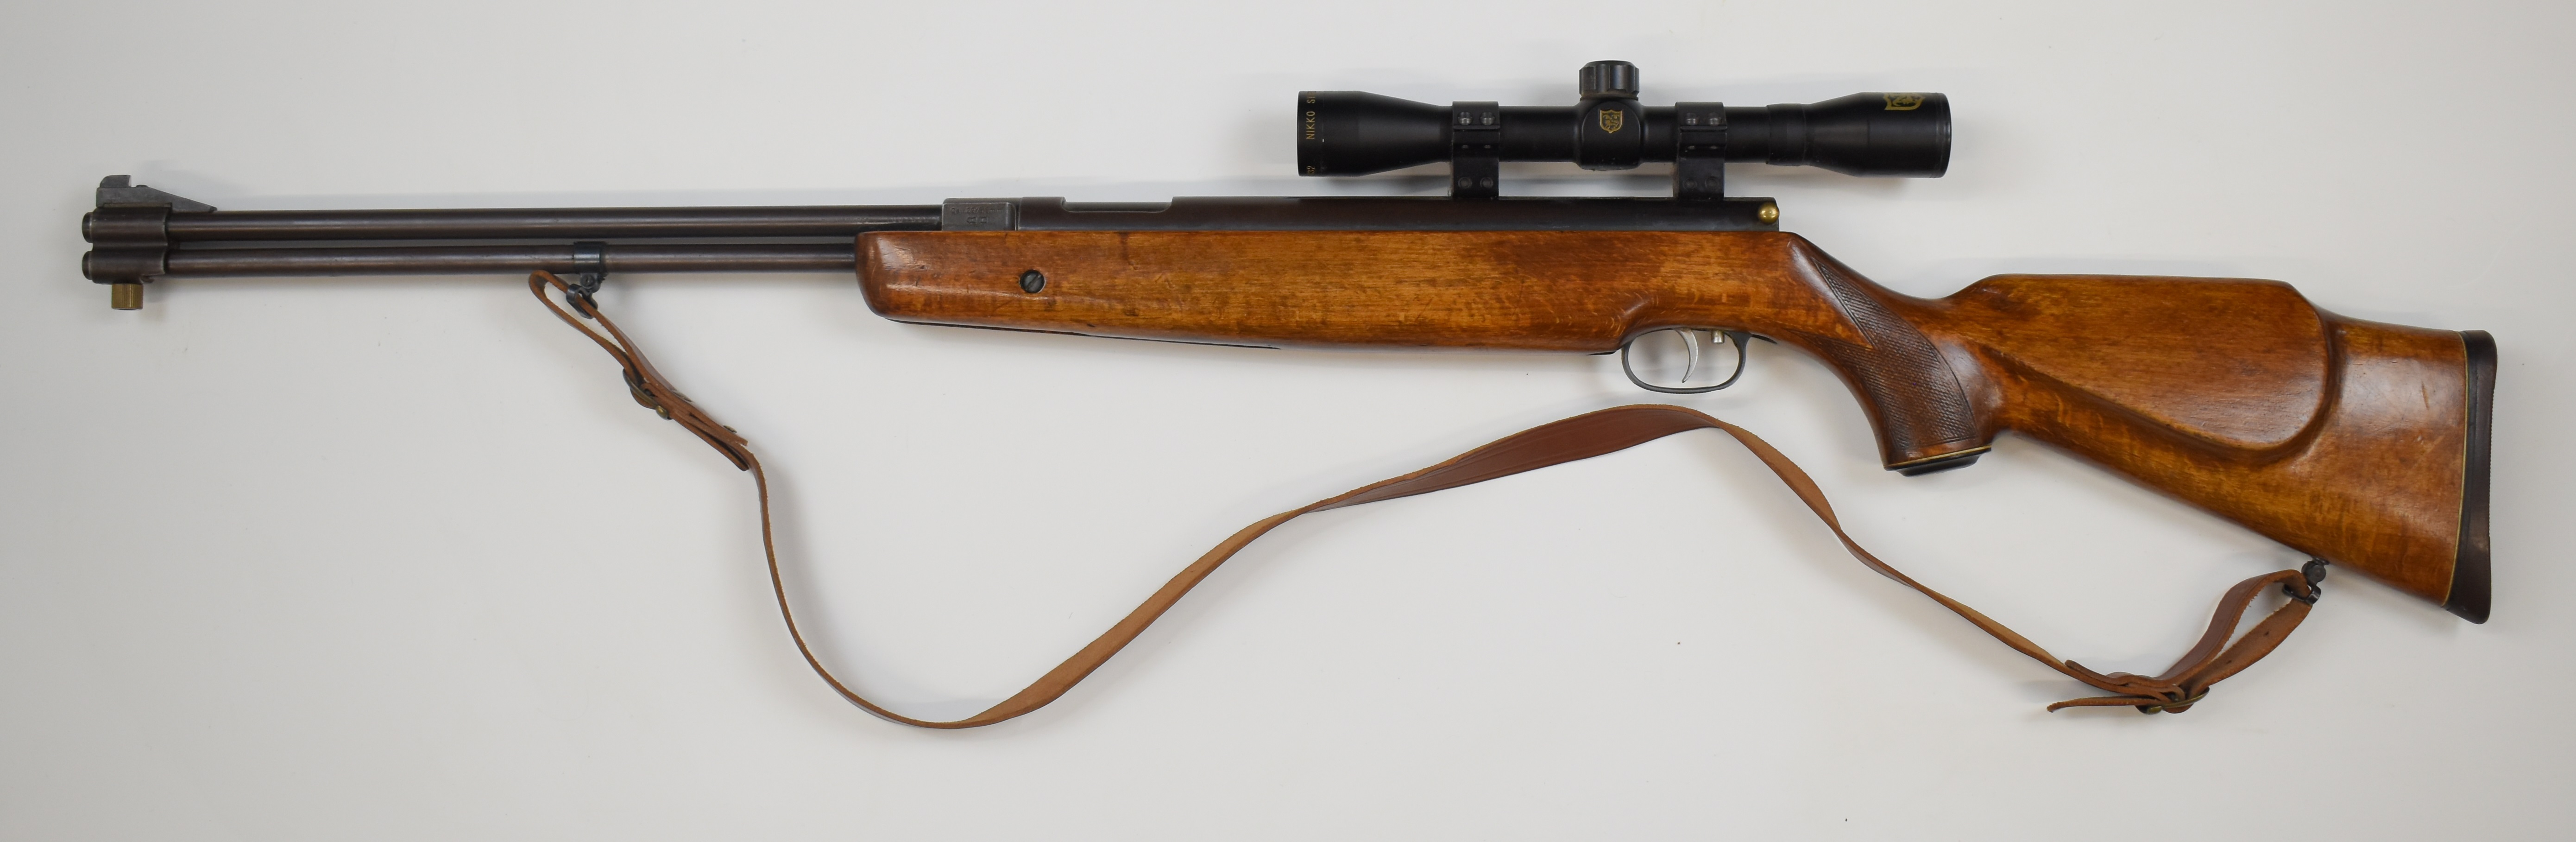 Weirauch HW77 .22 underlever air rifle with chequered semi-pistol grip, raised cheek piece, - Image 6 of 9